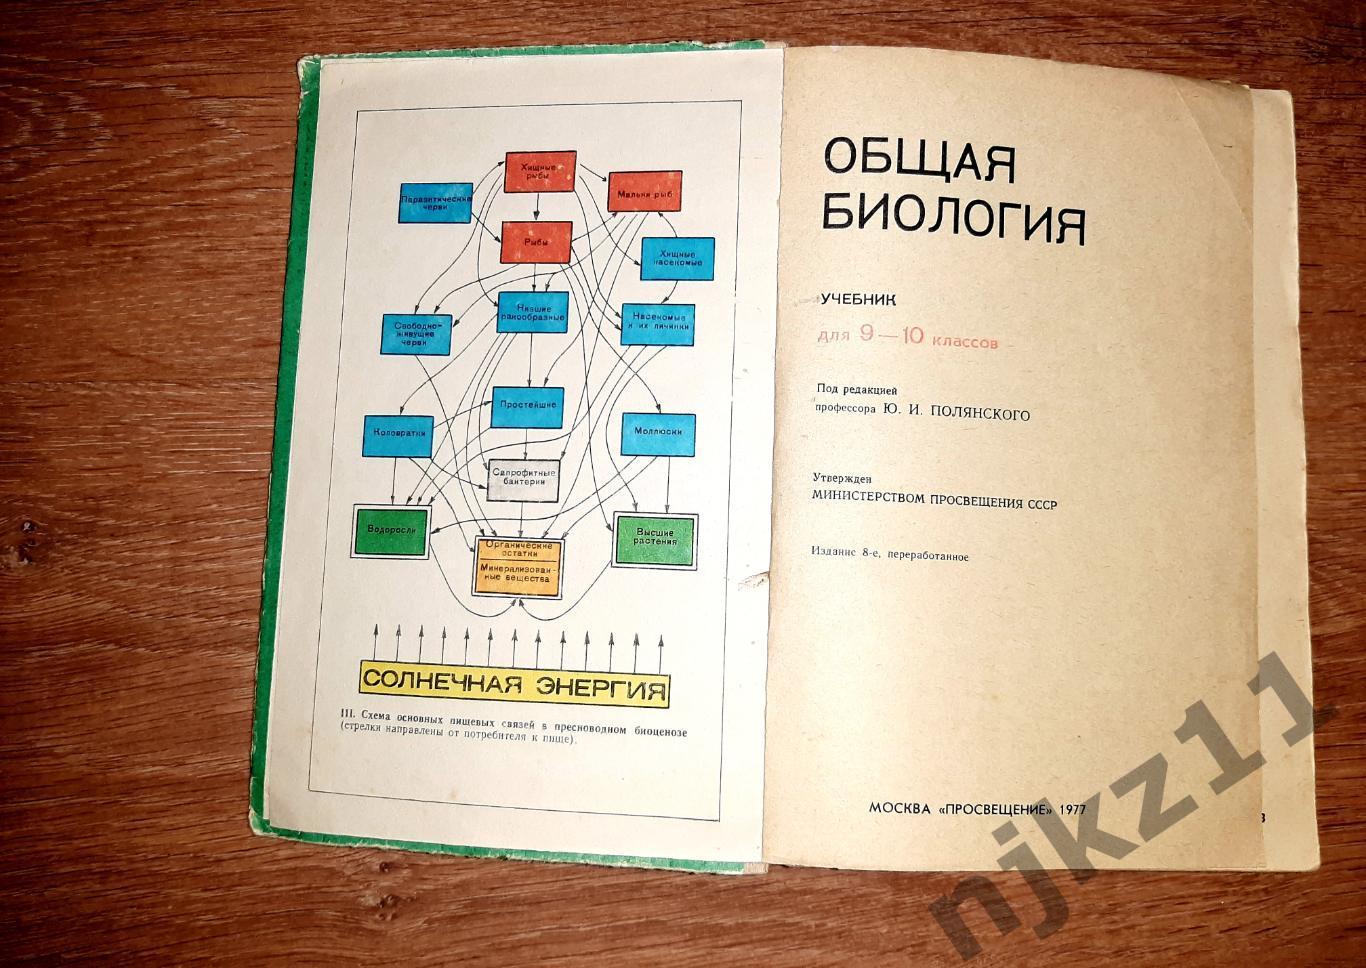 Полянский, Ю.И. Общая биология. Учебник для 9-10 классов 1977г 2